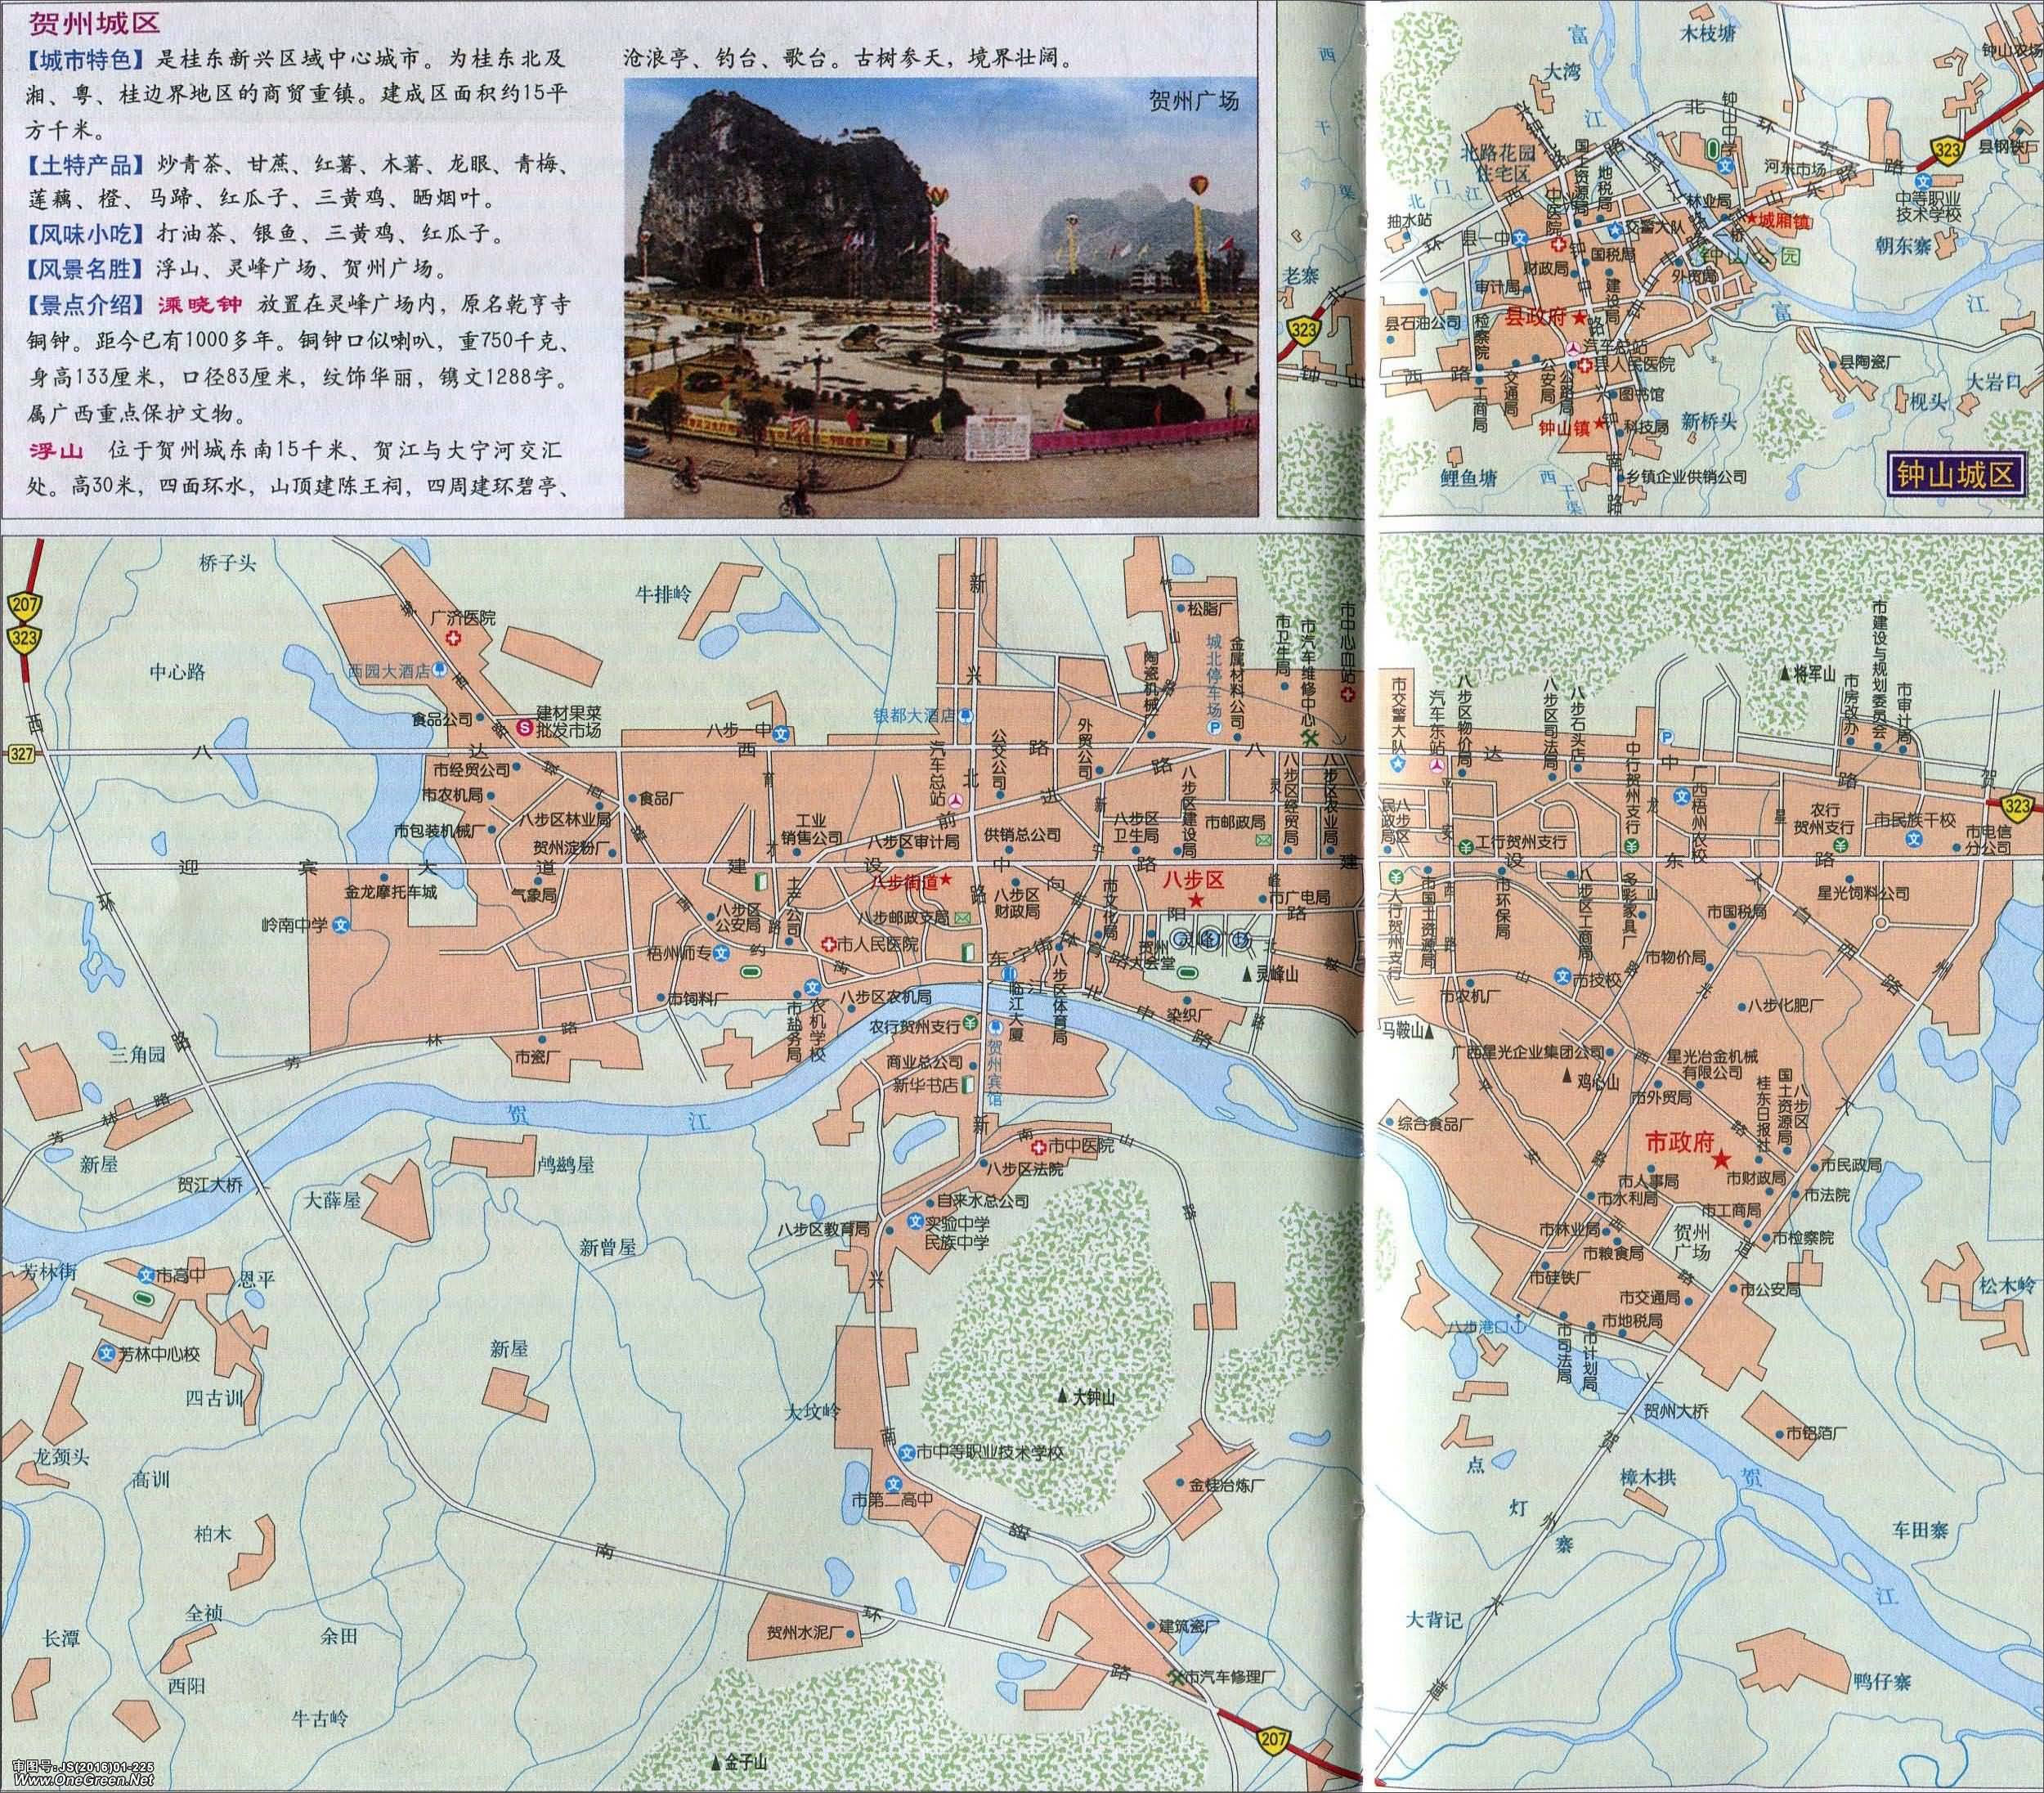 防城港  钦州  贵港  玉林  百色  河池  来宾  崇左 上一张地图: 富图片